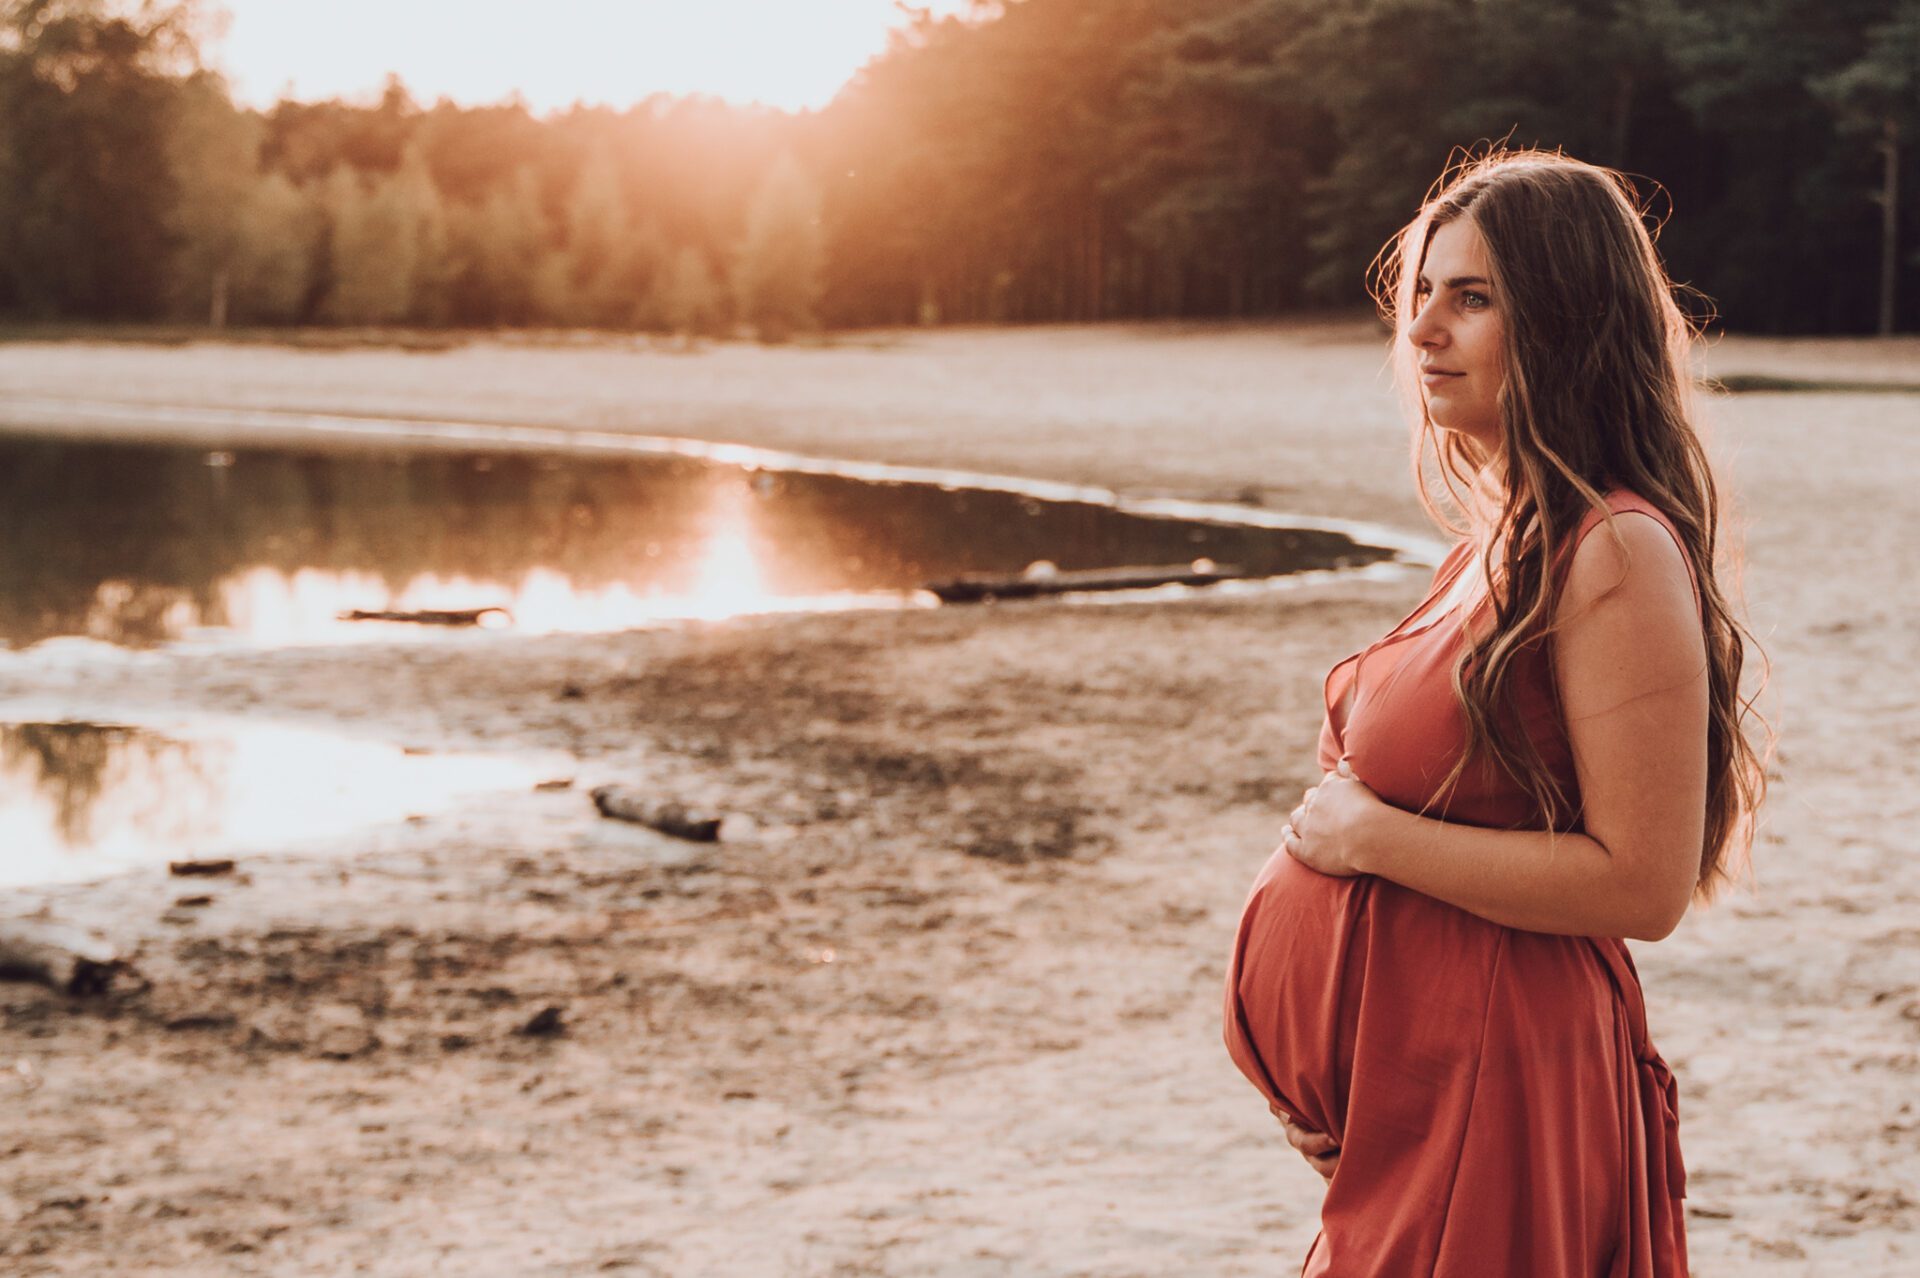 Zwangerschapsfotoshoot door flow photography, zwangere kijkend naar ondergaande zon naast een meer